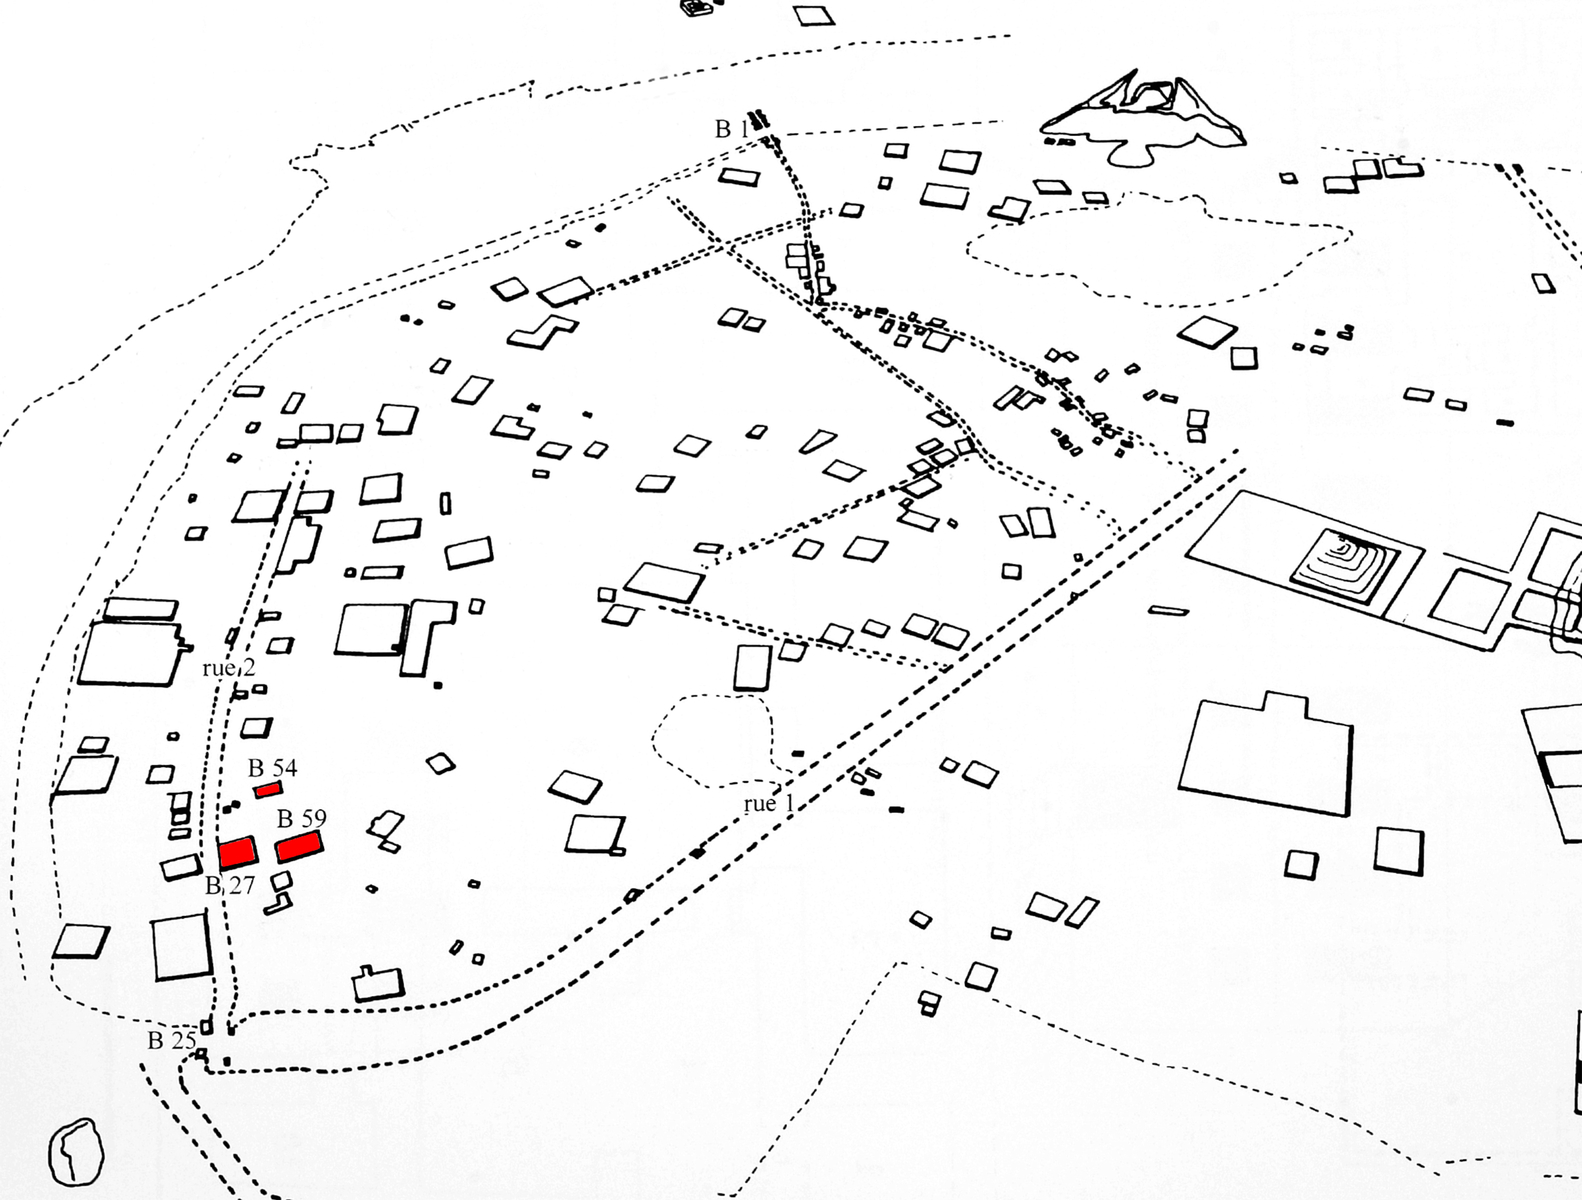 Emplacement des maisons fouillées. © Mission Archéologique française de Larsa-‘Oueili, publié dans Calvet, 20003, p. 234, fig. 43, dessin J. Suire